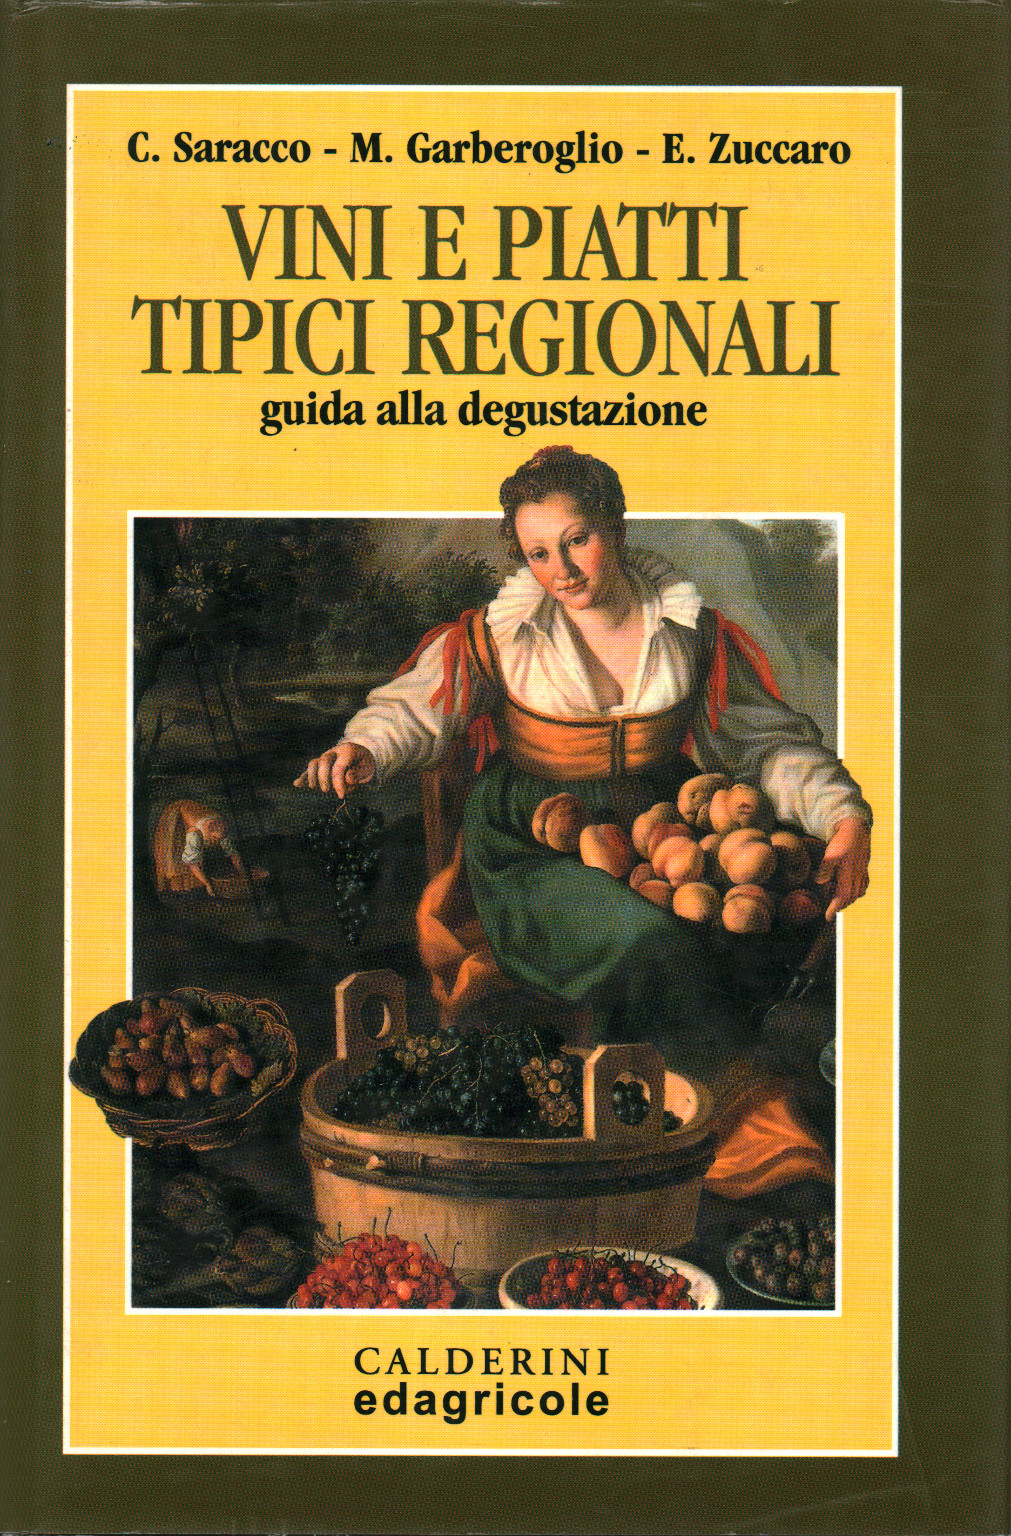 Vinos y platos típicos regionales, s.una.